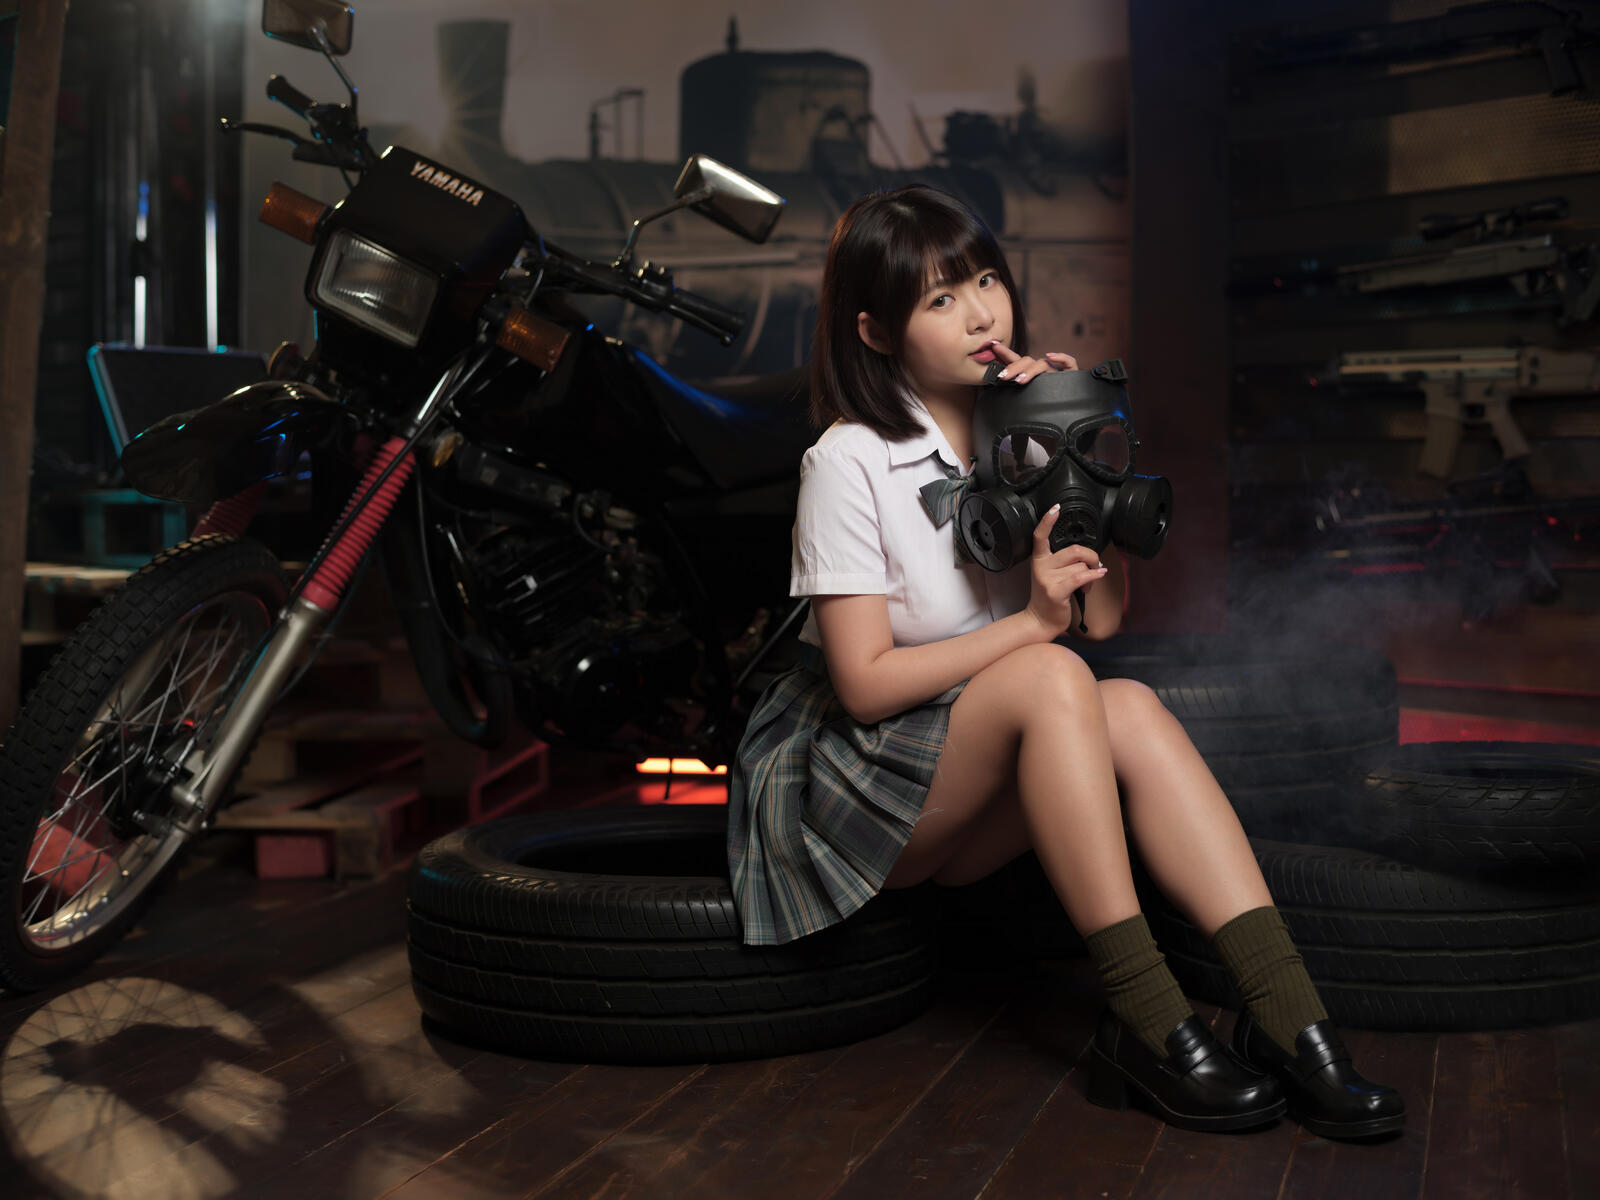 Бесплатное фото Девочка азиатской внешности на фоне кроссового мотоцикла